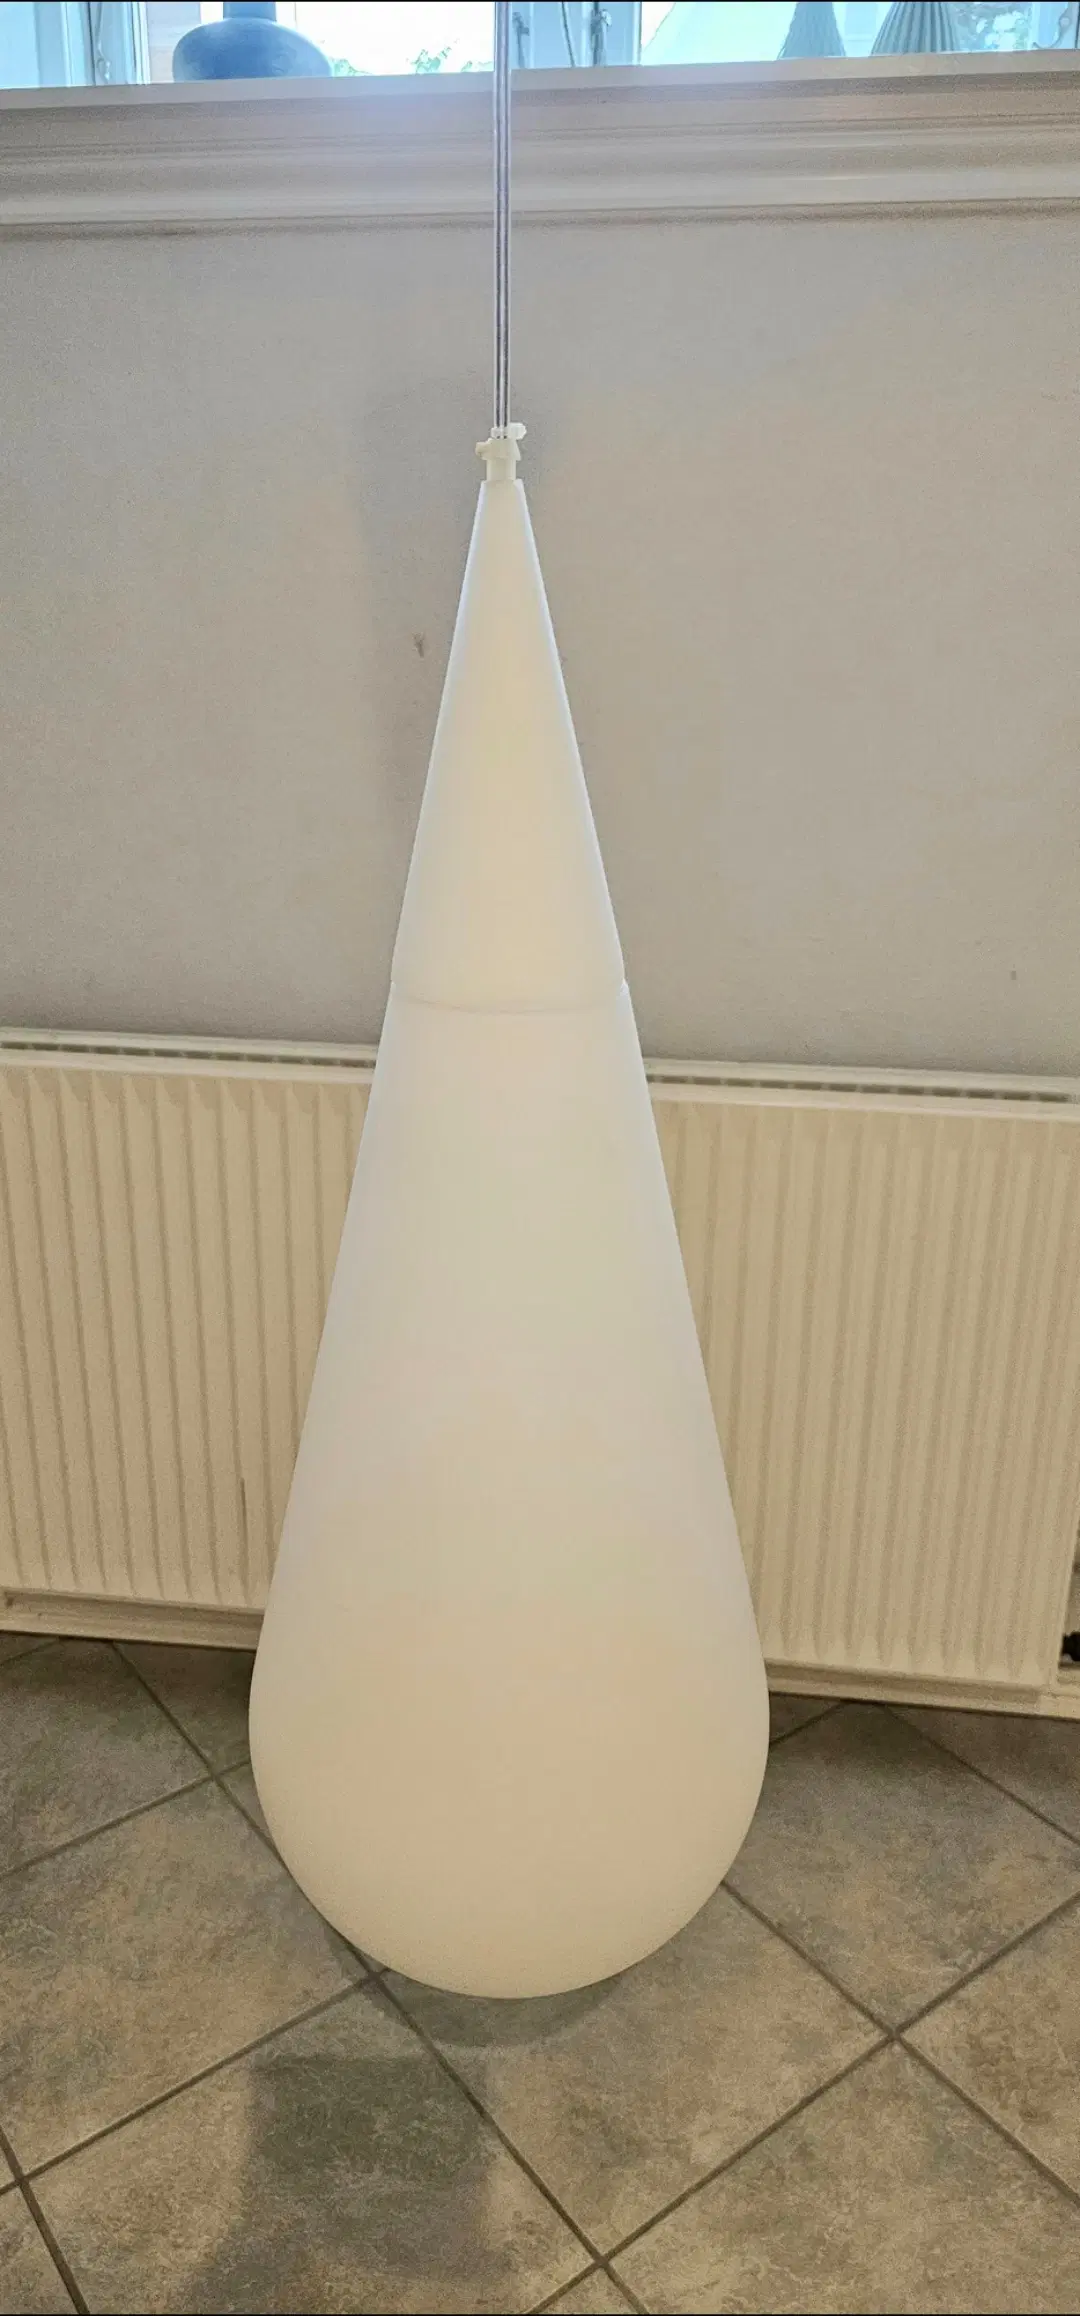 Goccia H1 Pendel - Designer lampe